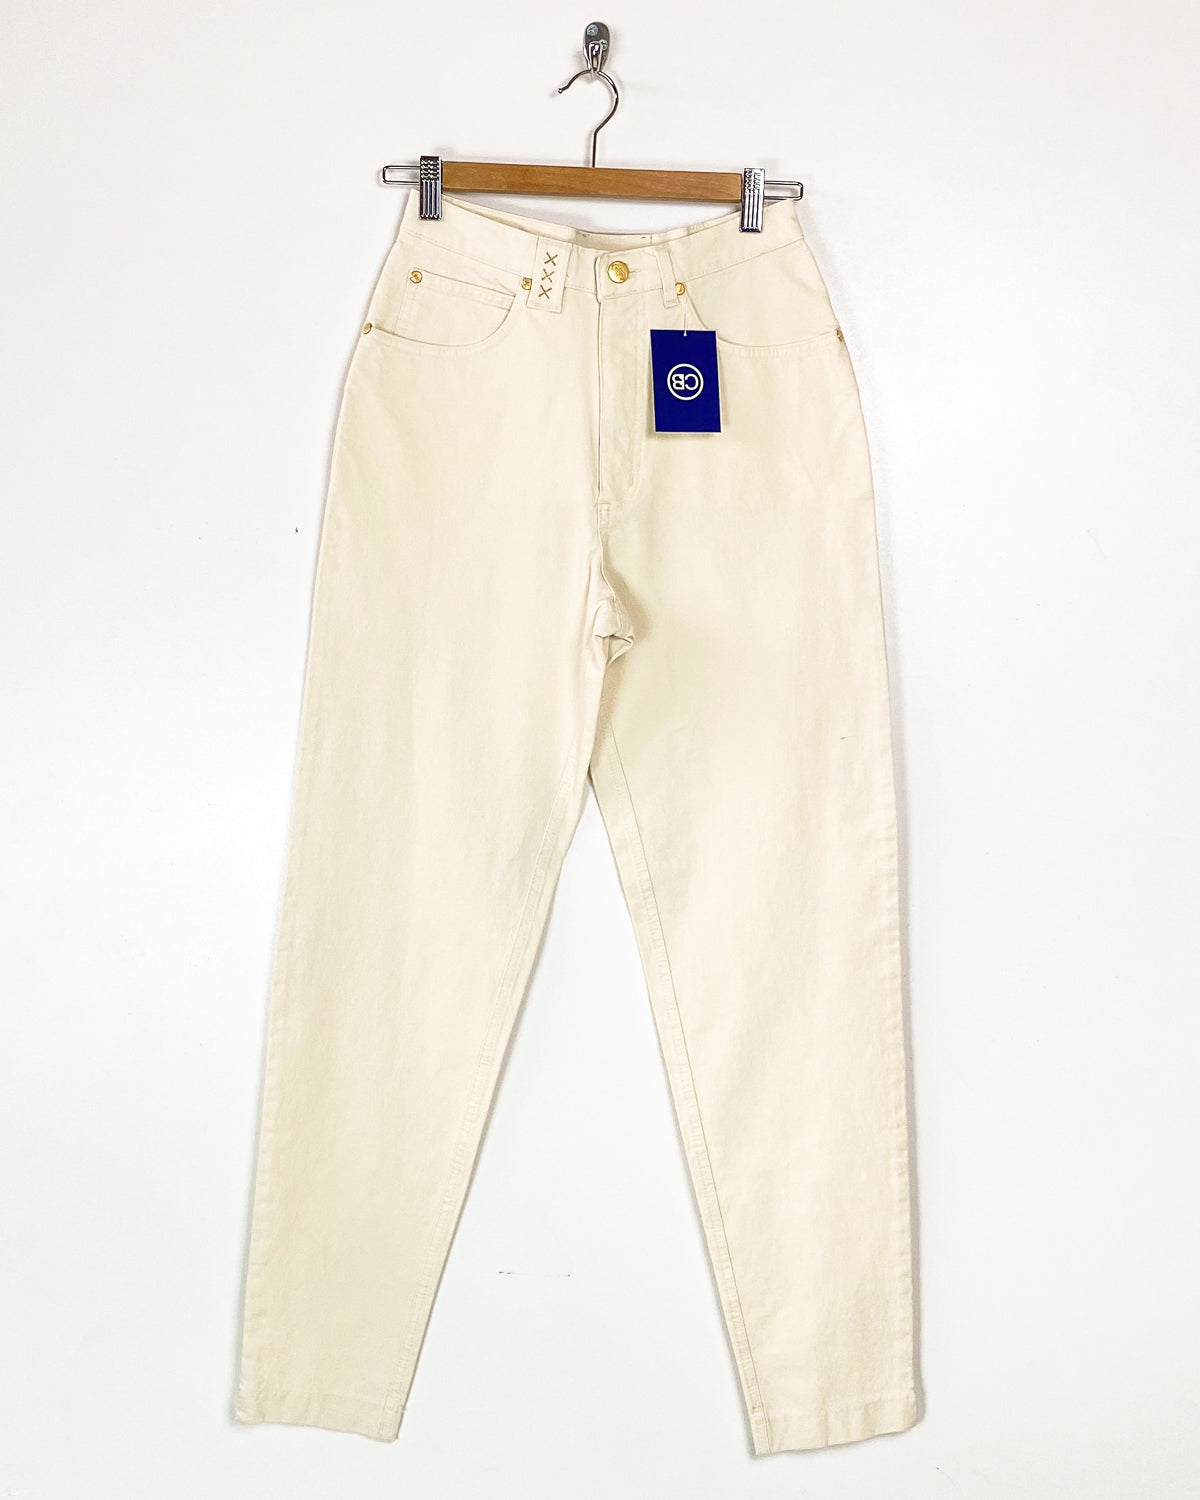 Jeans Vintage Taglia 44